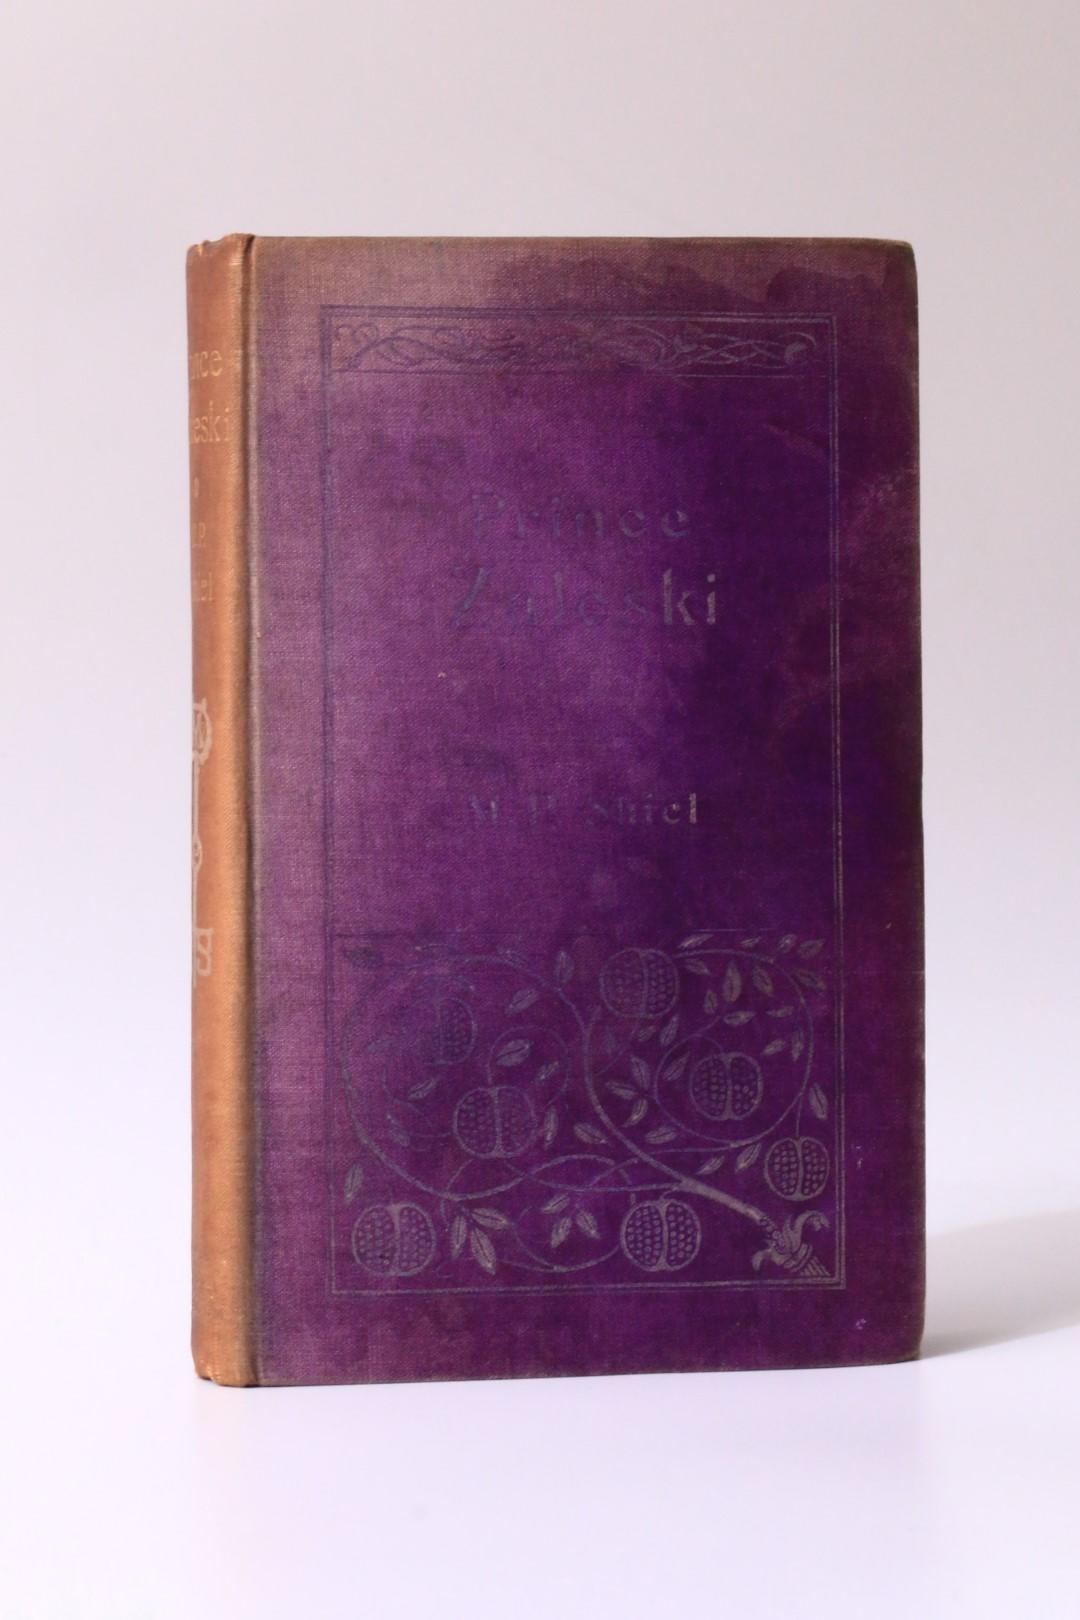 M.P. Shiel - Prince Zaleski - John Lane, 1895, First Edition.